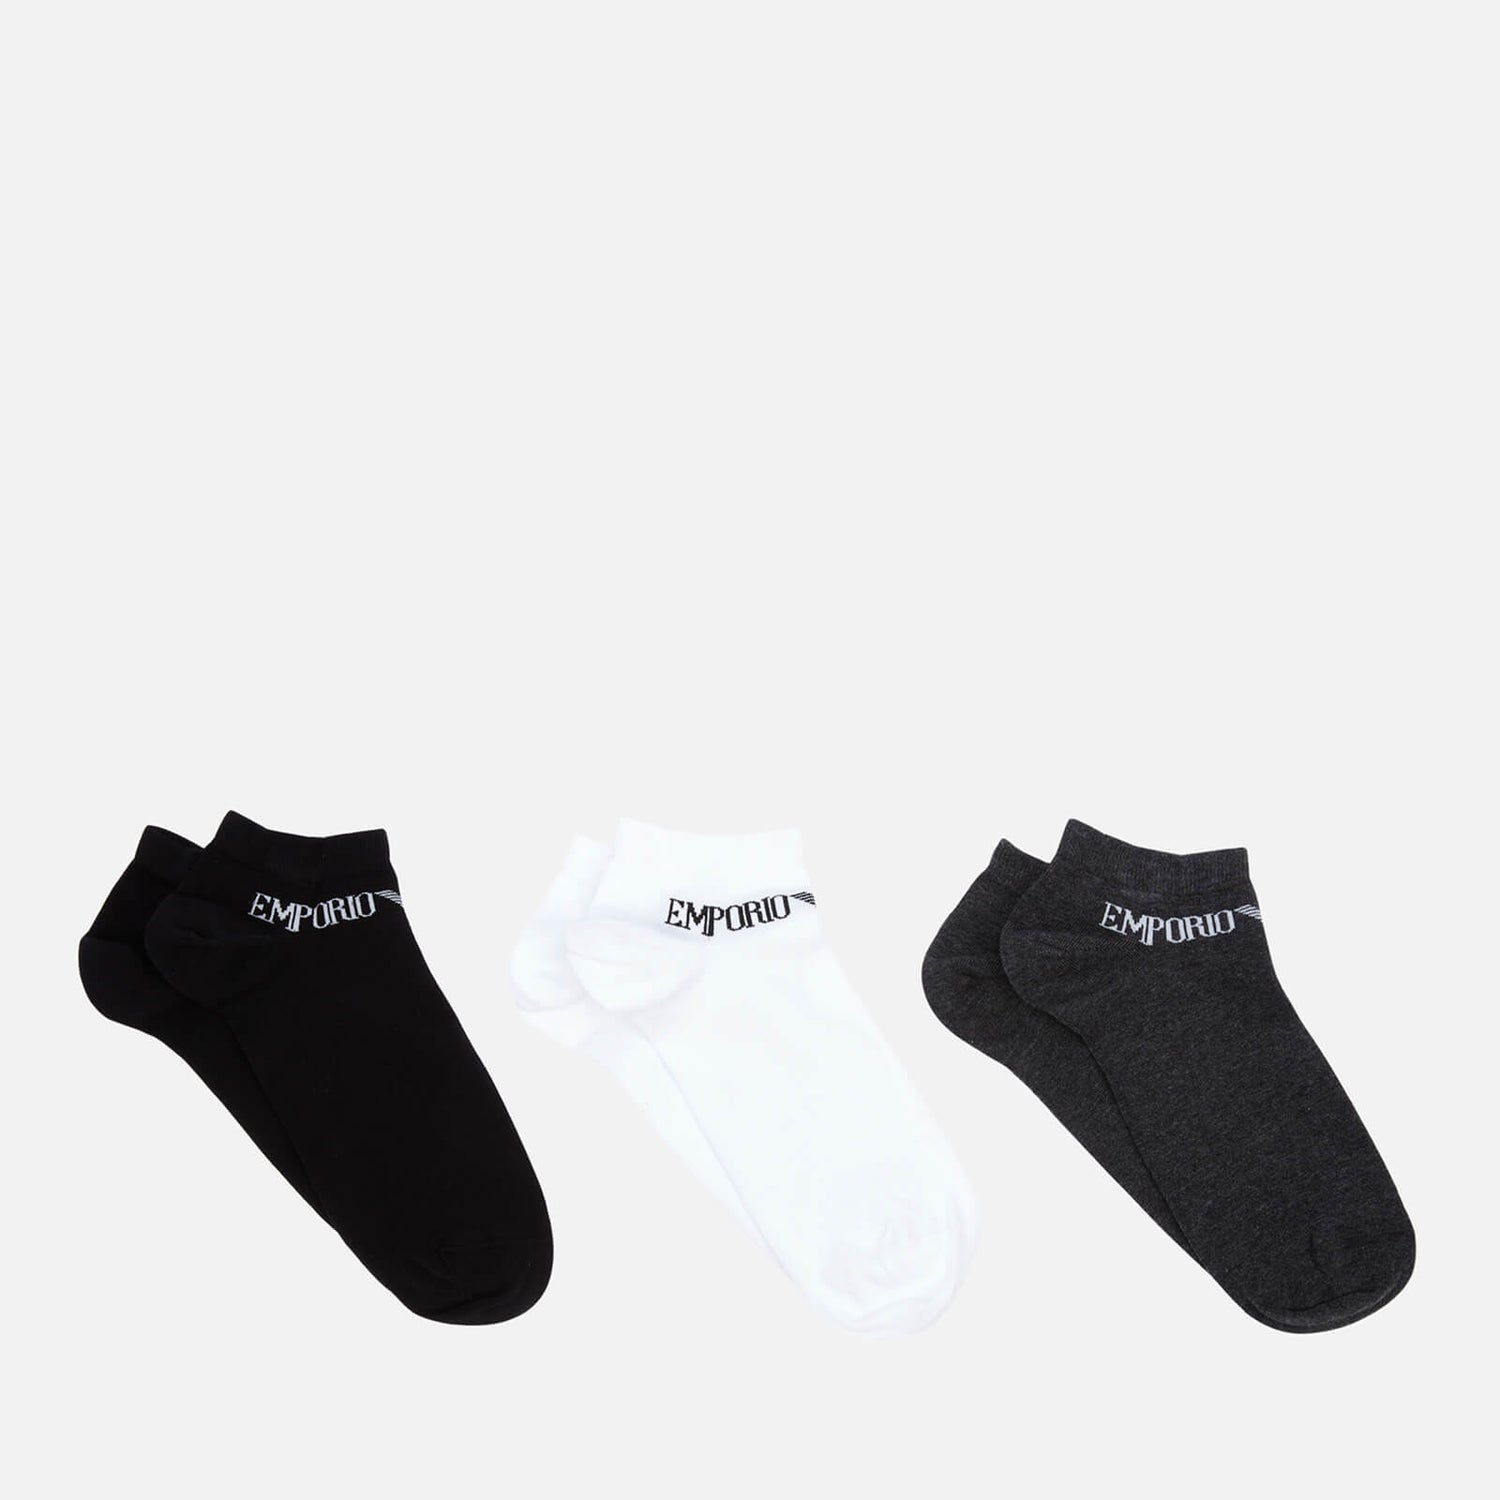 Emporio Armani Men's 3-Pack In Shoe Socks - Black/White/Grey